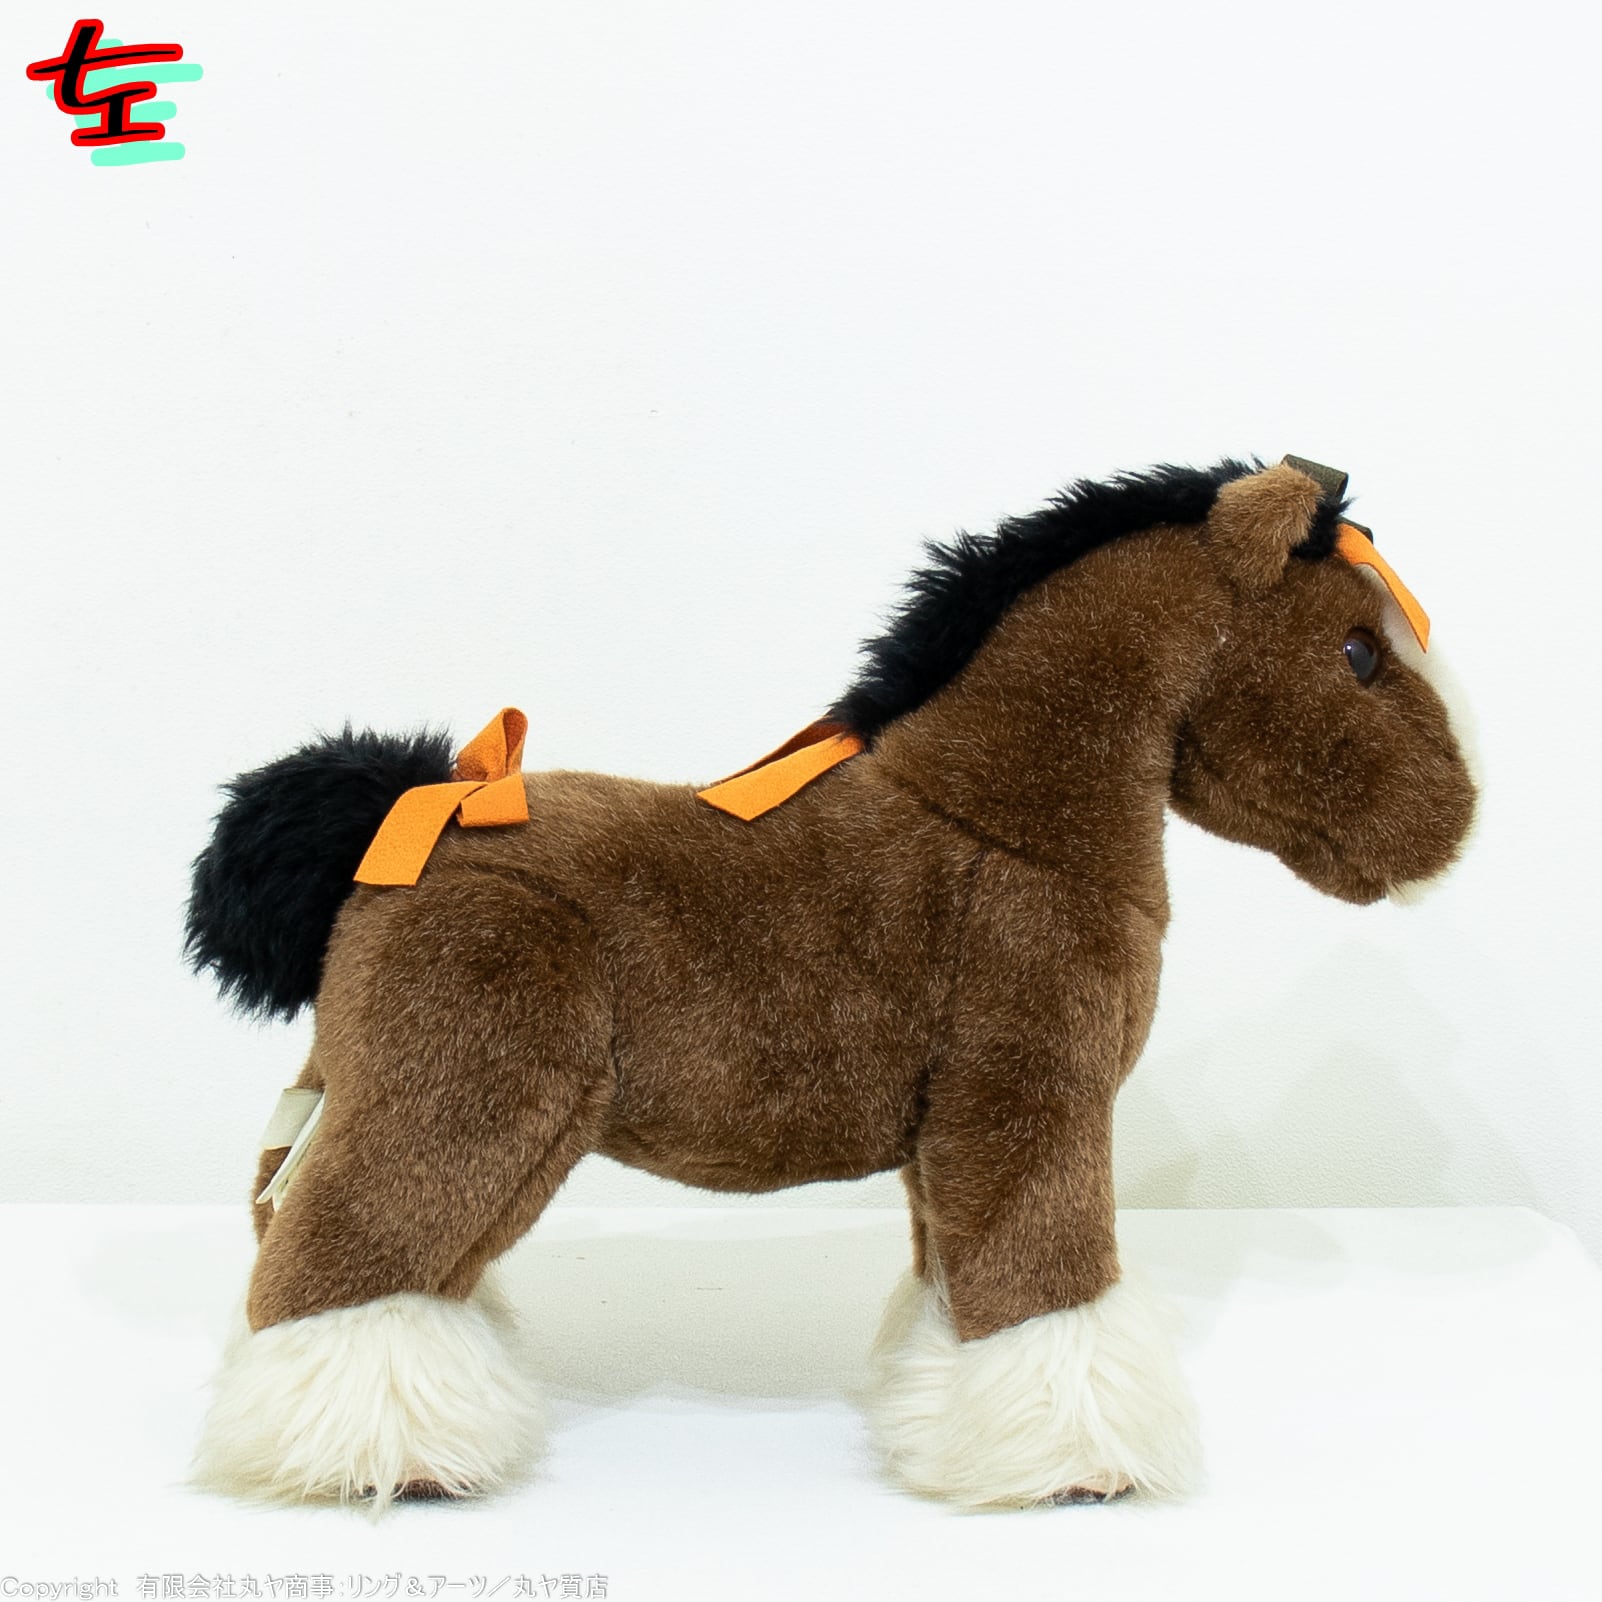 エルメス:エルミー PPM ベリースモール(馬の人形)/H400085M 00/Hermès